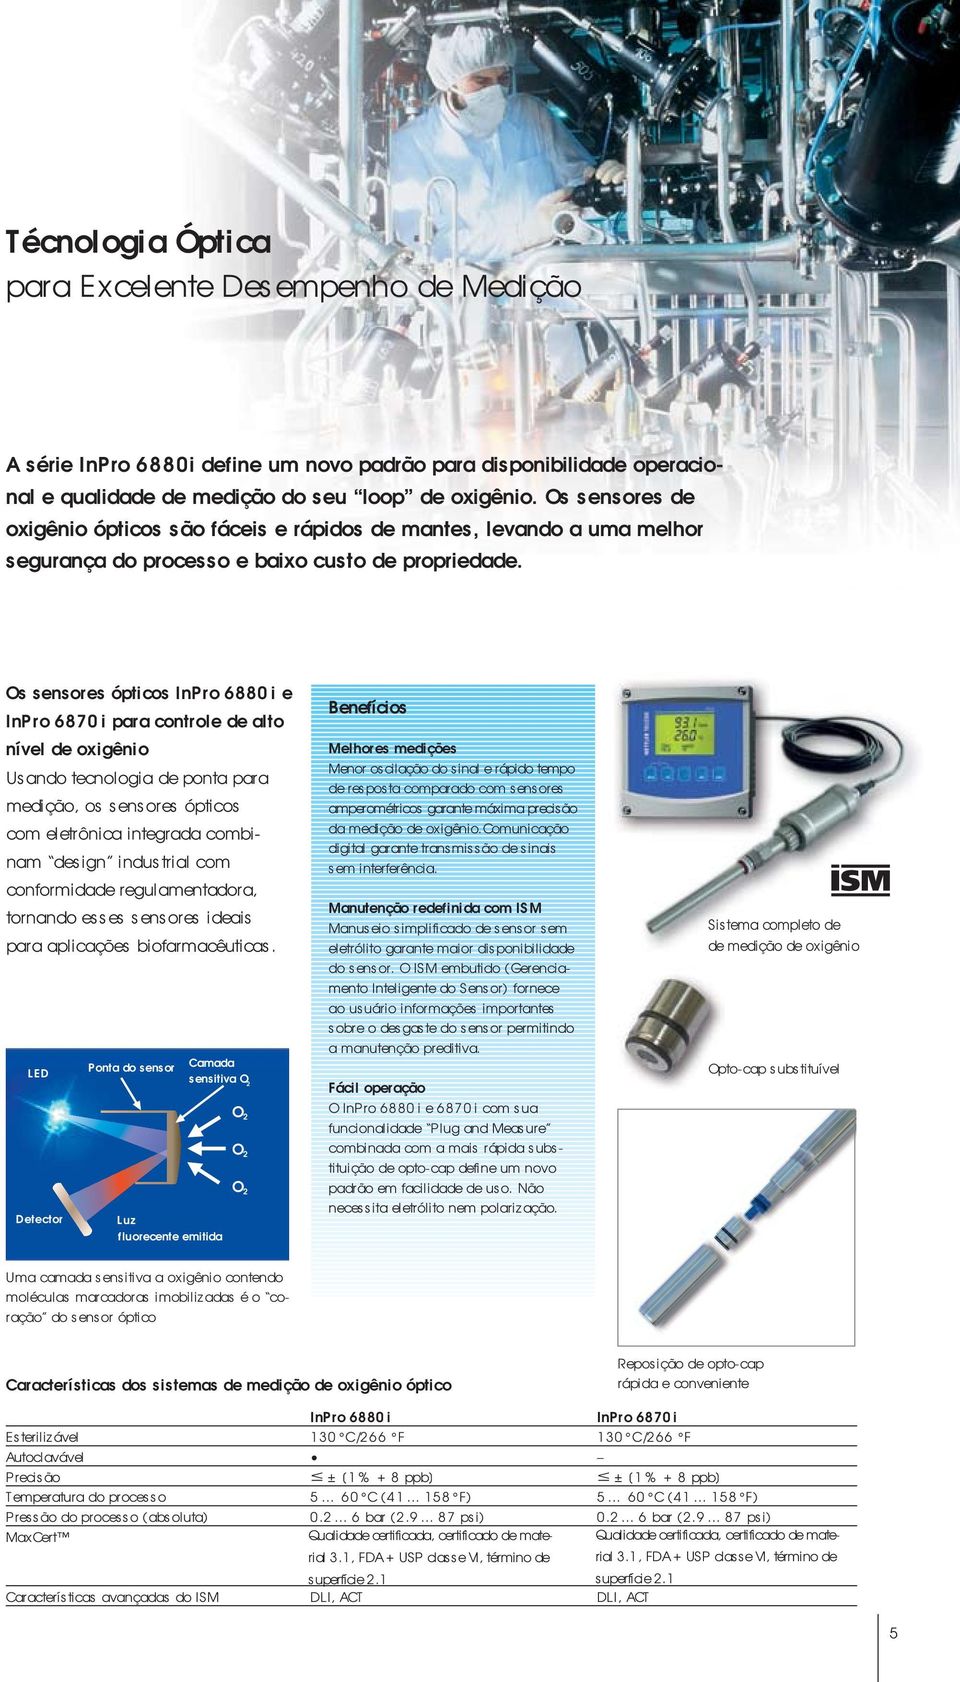 Os sensores ópticos InPro 6880i e InPro 6870i para controle de alto nível de oxigênio Usando tecnologia de ponta para medição, os sensores ópticos com eletrônica integrada combinam design industrial